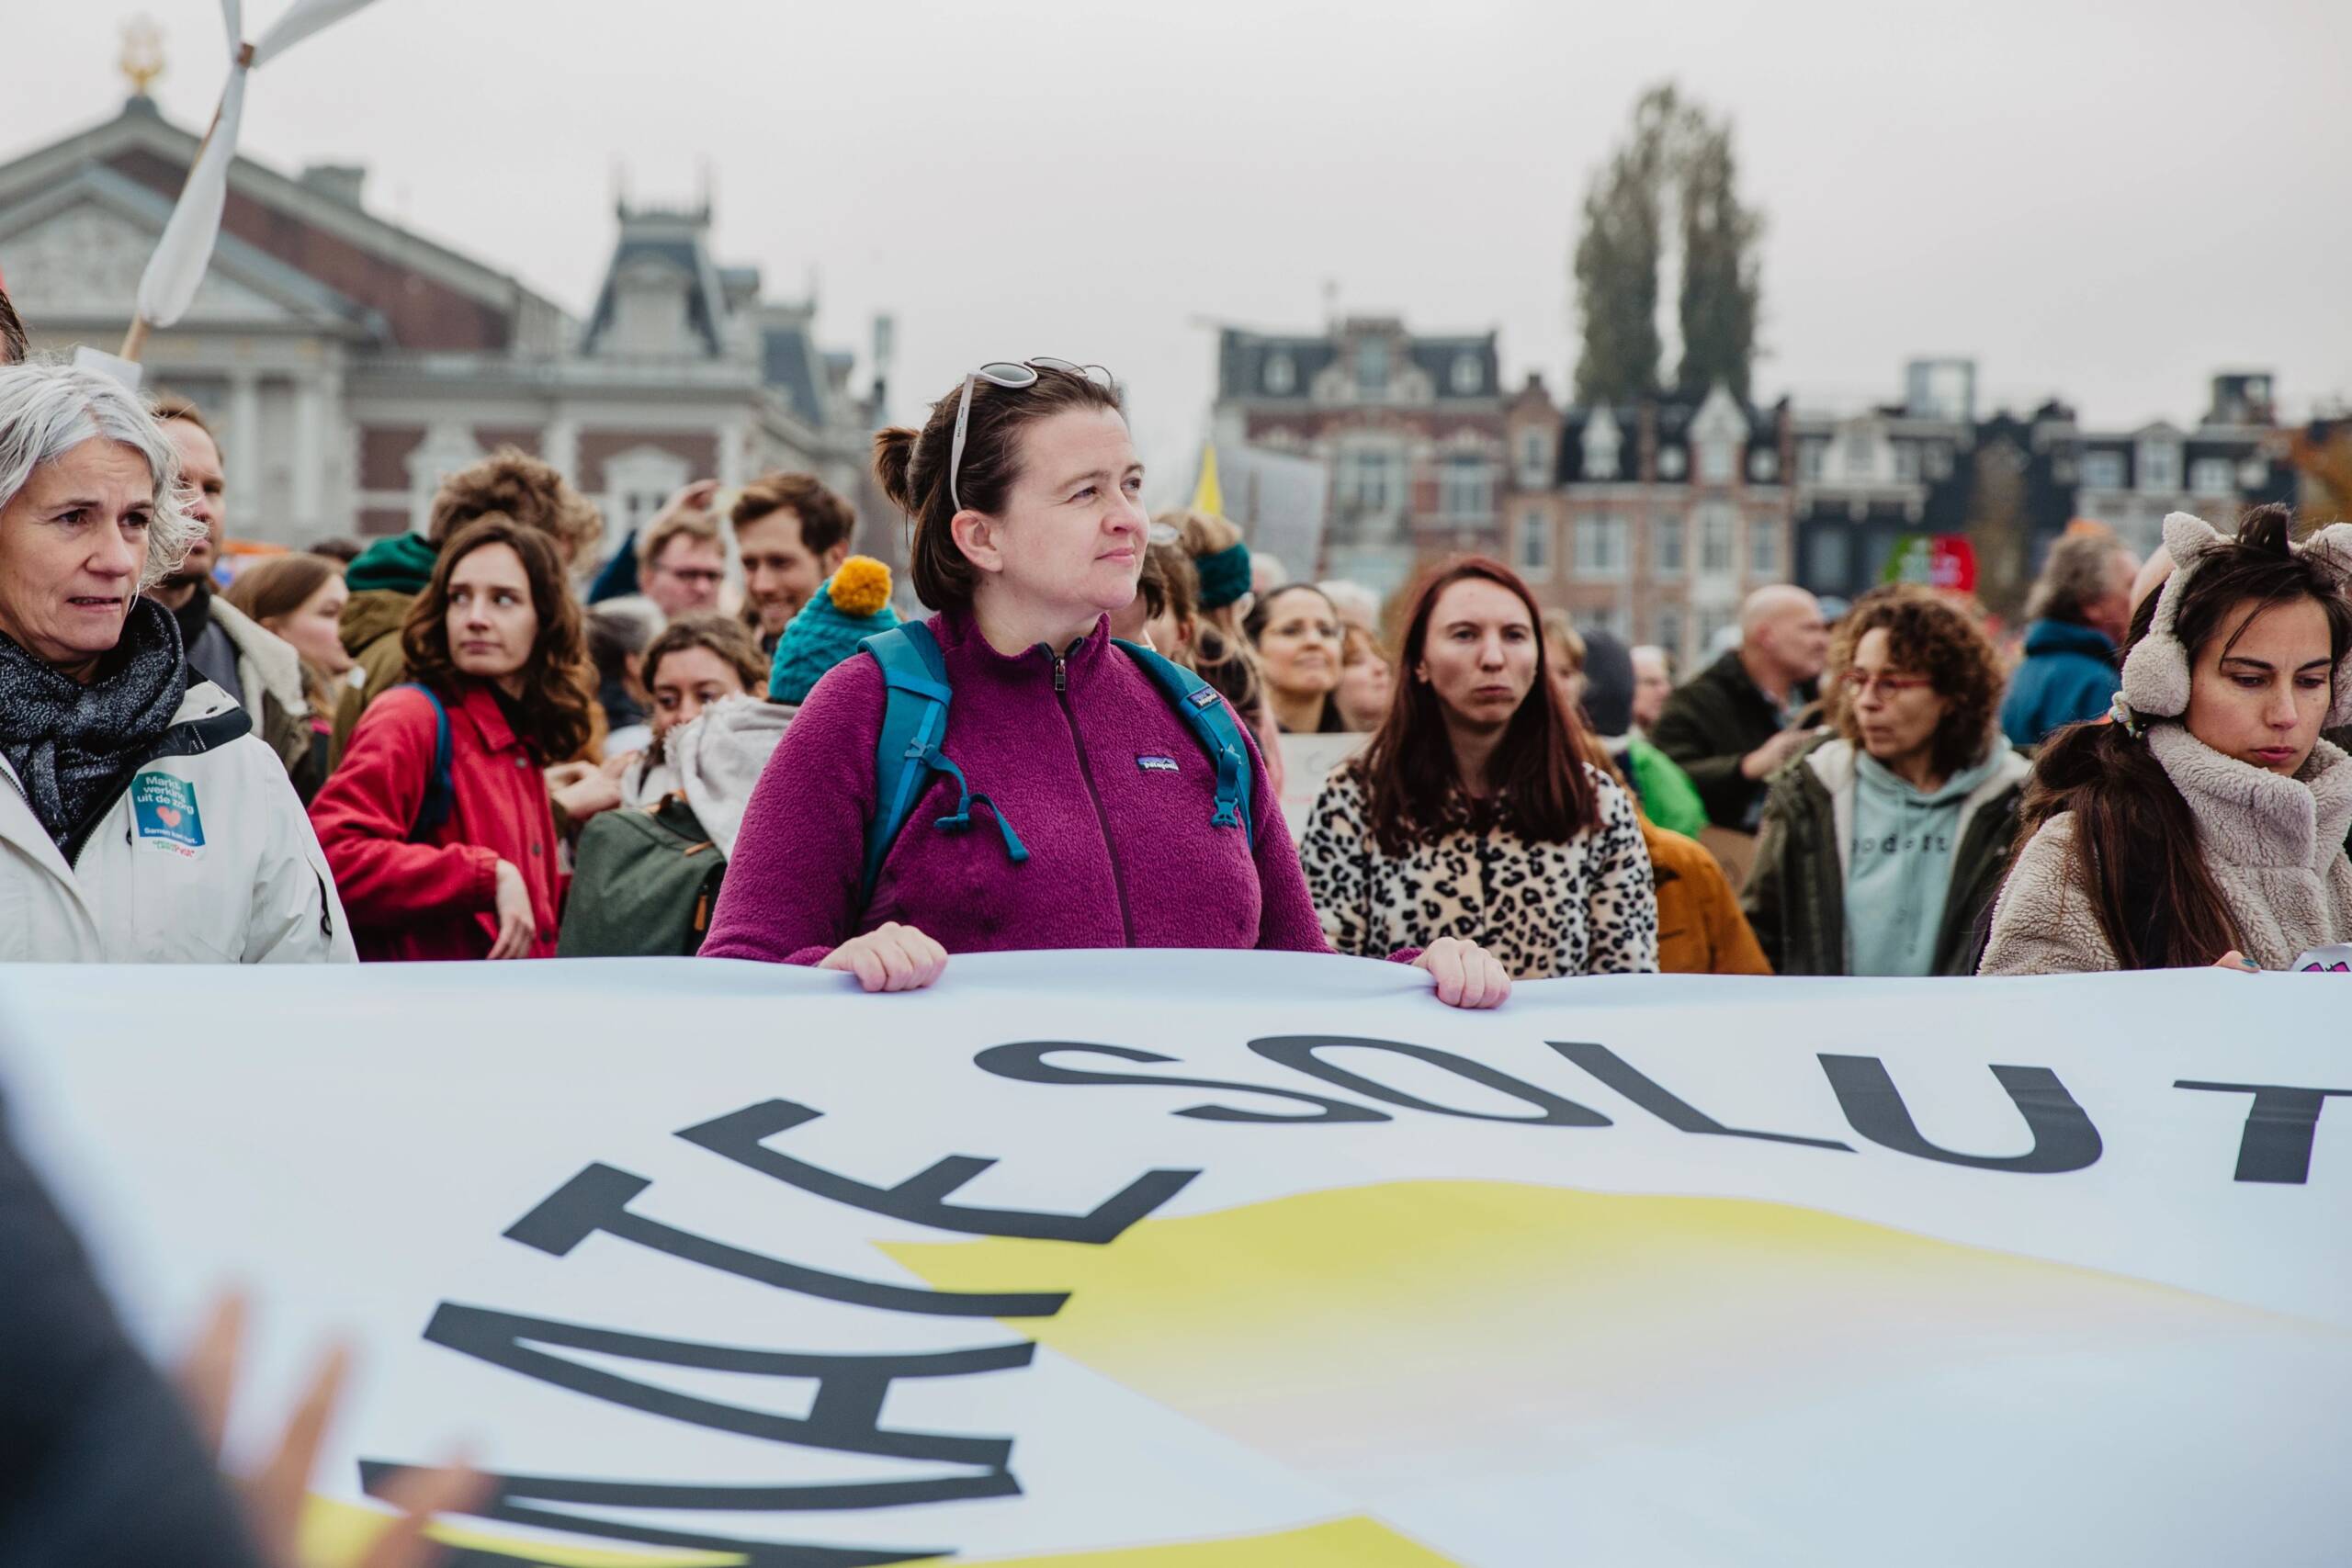 Amsterdã, Holanda, 12 de novembro: A 350.org e a Fossielvrij NL levam o apelo de renovação energética a uma passeata pelo clima que bateu recordes nas ruas de Amsterdã. Mais de 85 mil pessoas saíram às ruas. Foto: Laura Ponchel / Fossielvrij NL